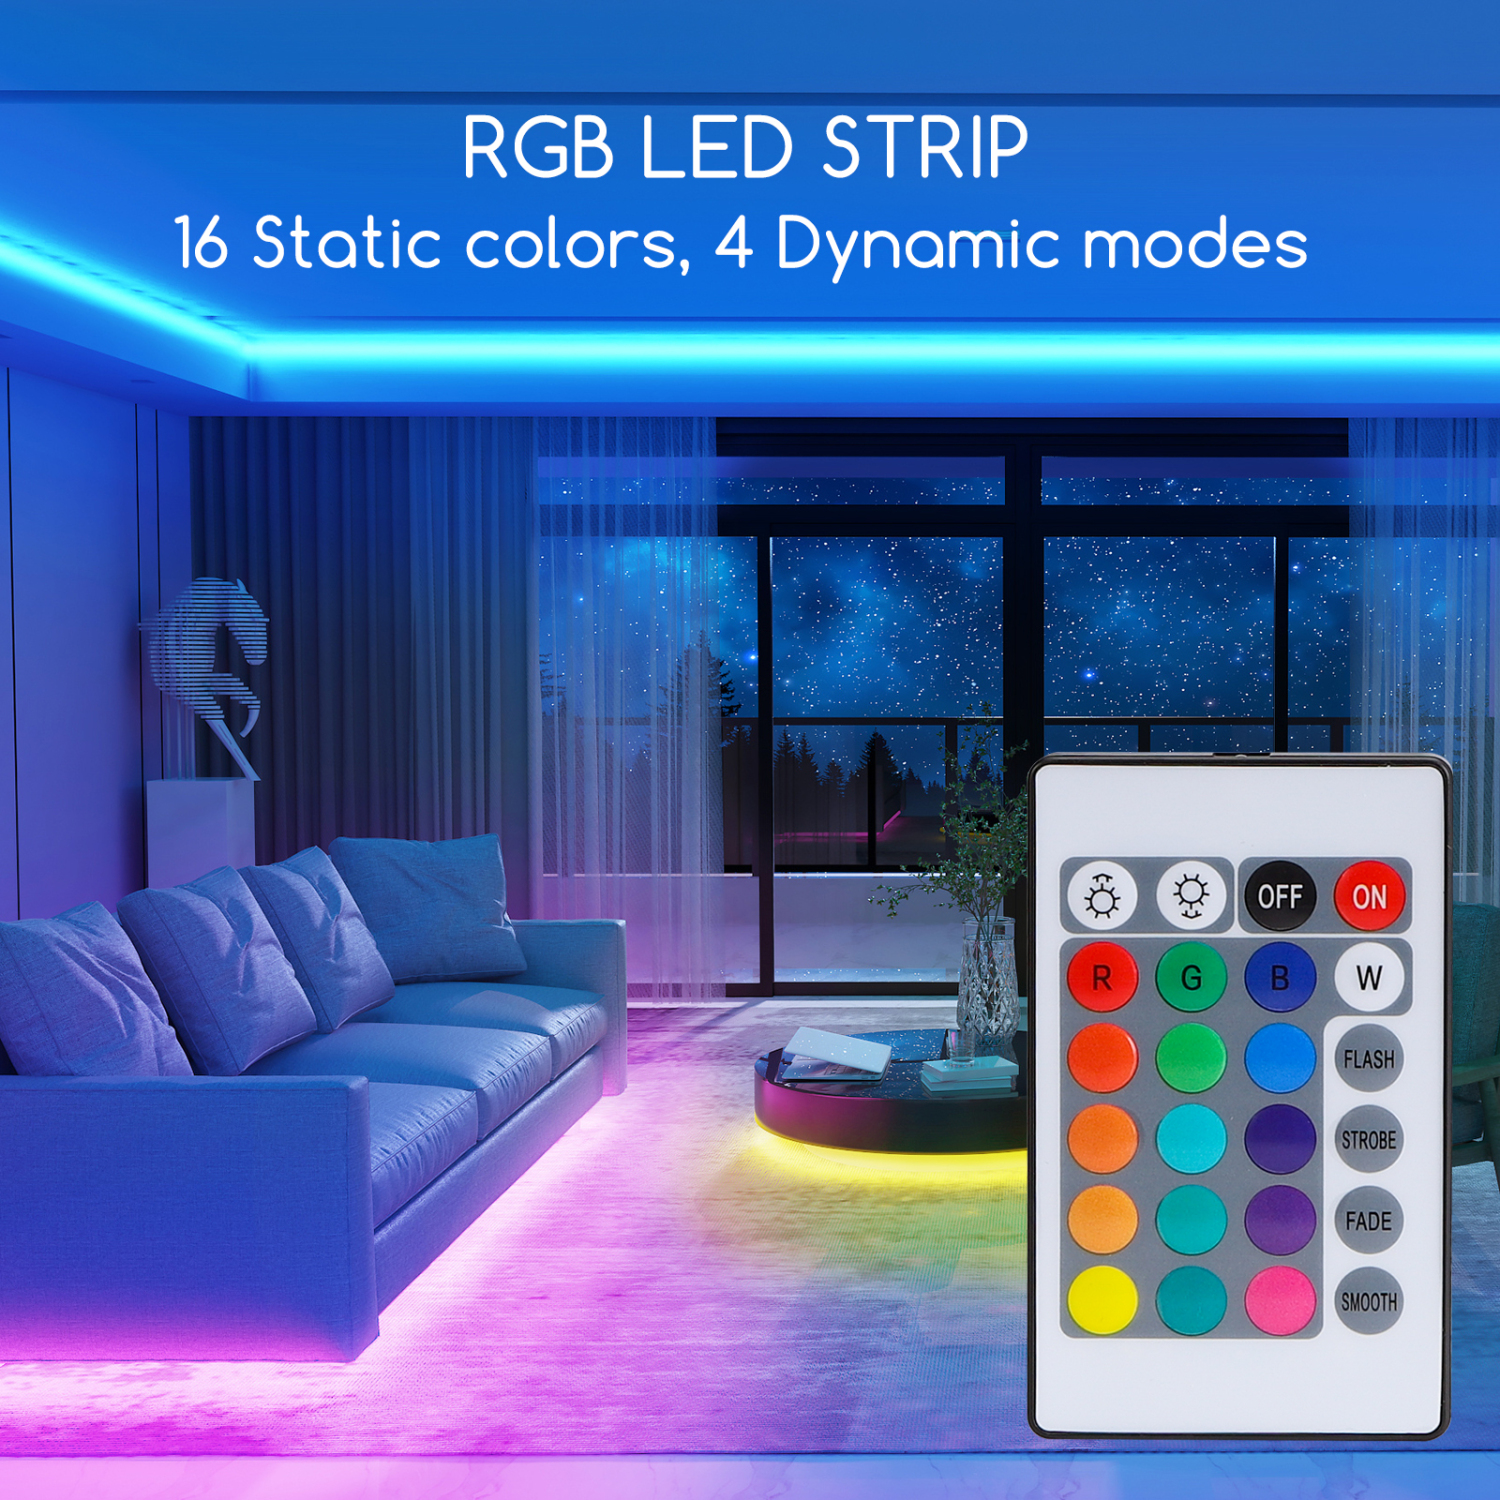 Aigostar LED Strip 5M, RGB LED Strip met Afstandsbediening, IP65 Waterdichte, LED Strip Light voor Thuis, TV, Slaapkamer, Keuken, Party, Veranda, Feest, Bar [Energieklasse A]